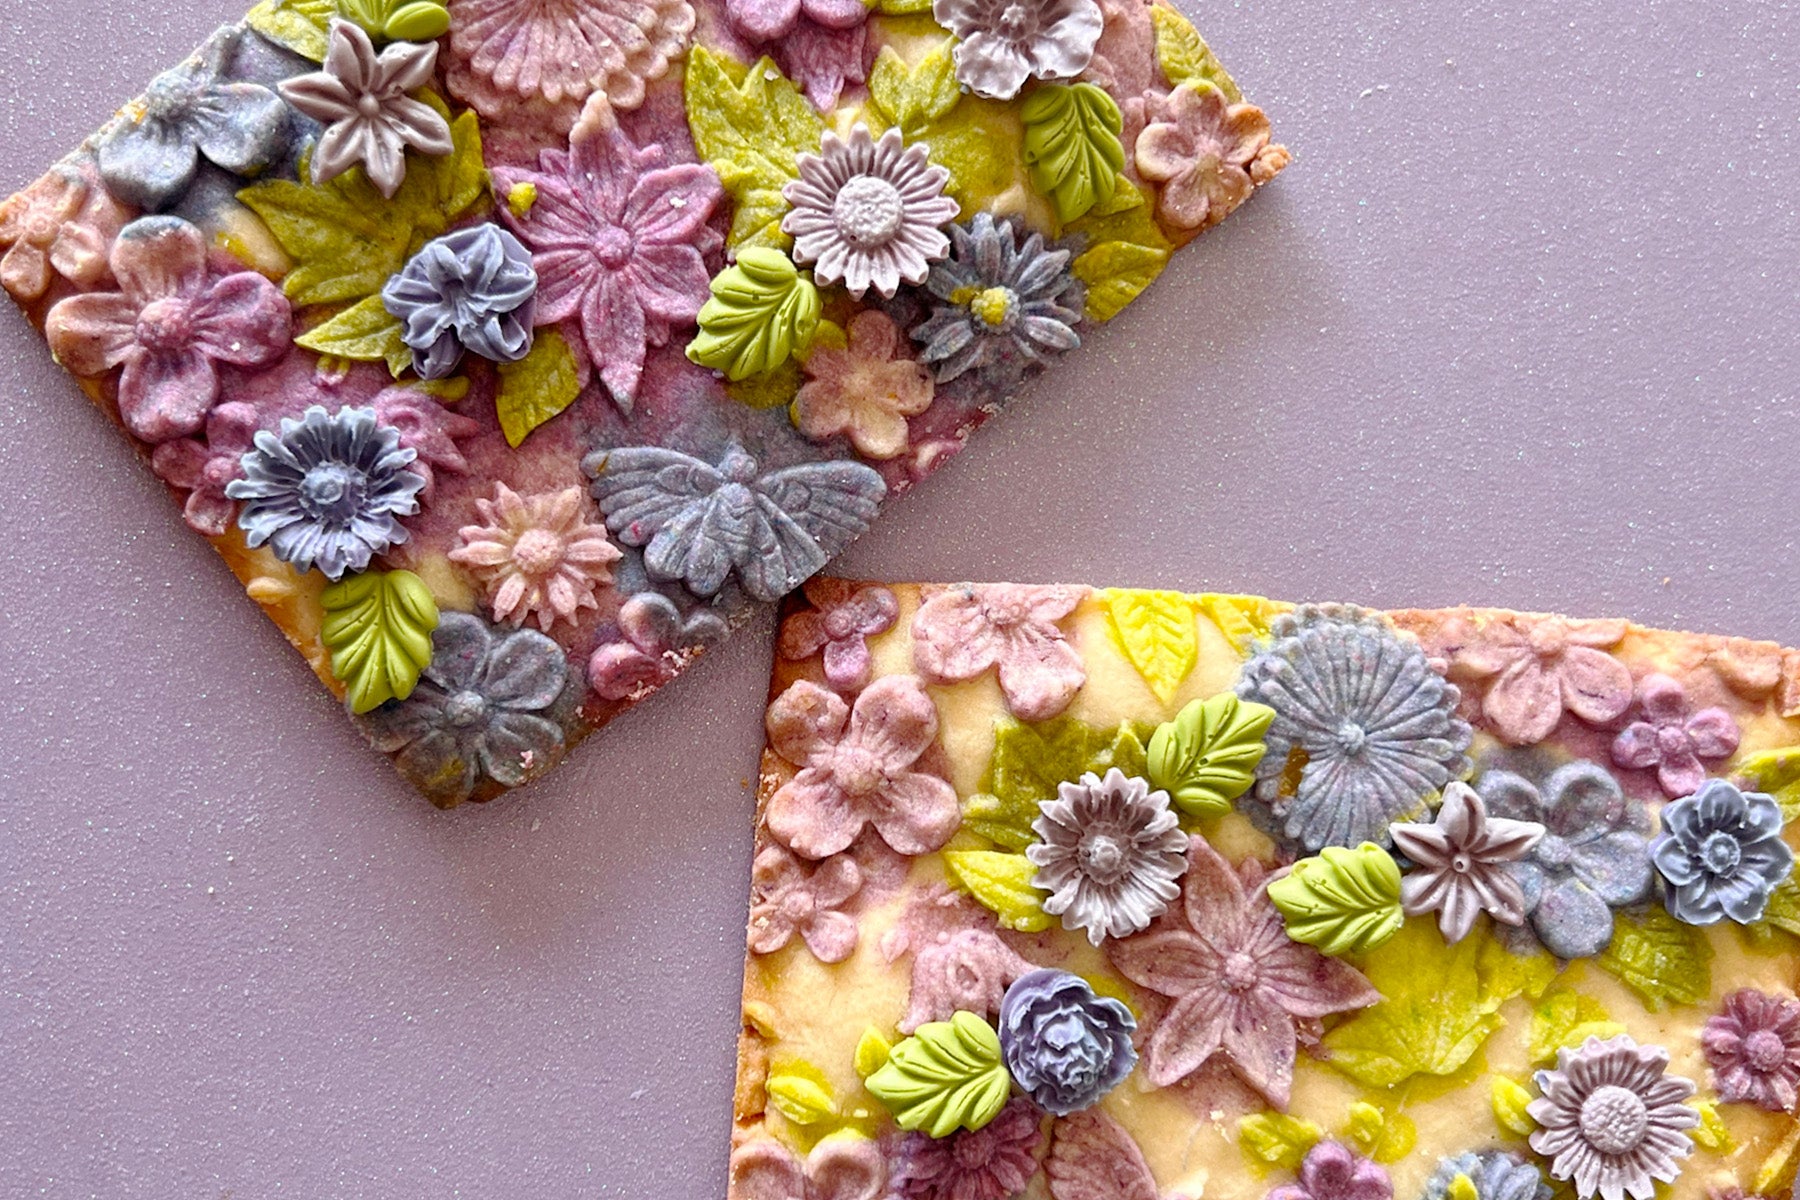 Flower cookies with food coloring gels Enco